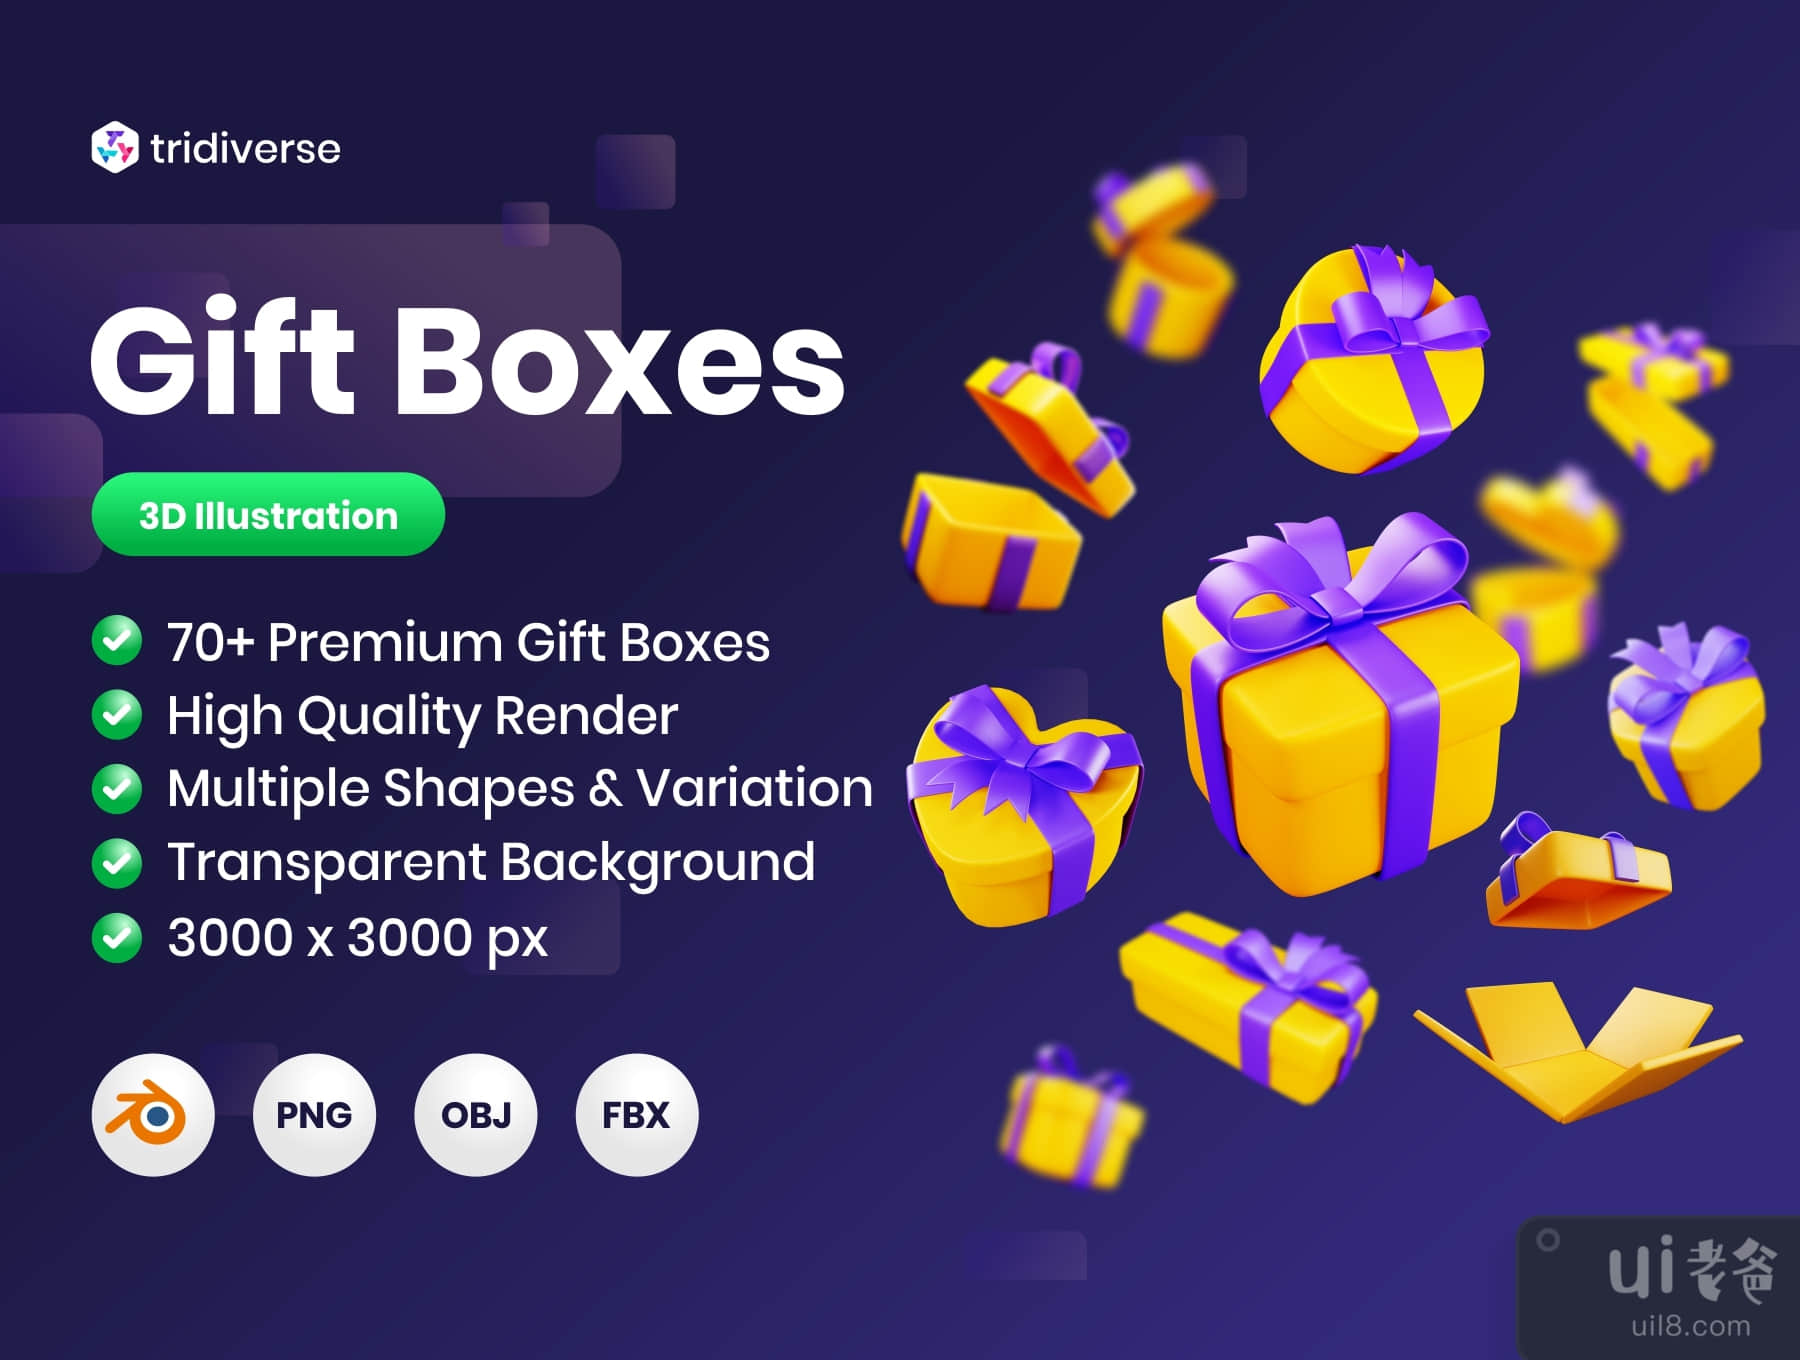 礼品盒 - 三维插图 (Gift Boxes - 3D Illustration)插图